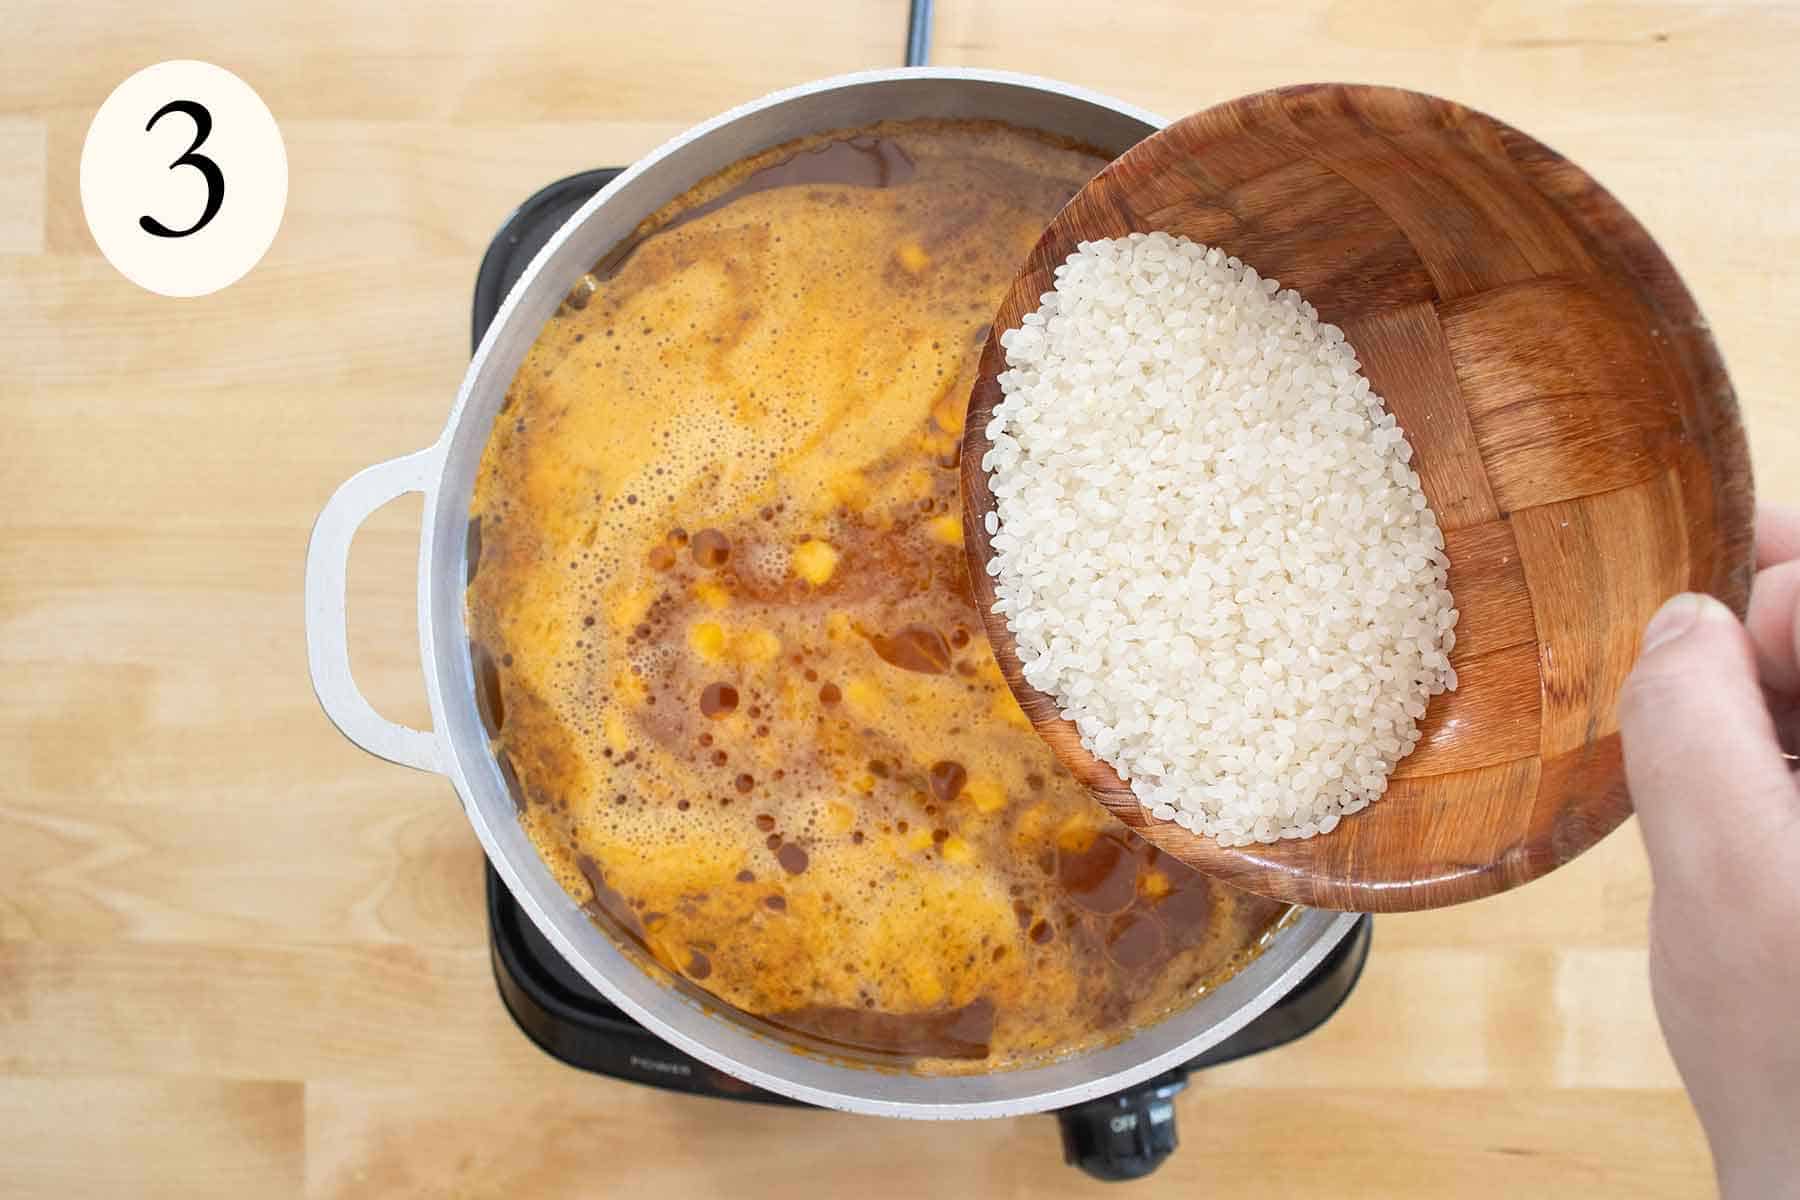 paso 3 de como se hace un arroz con maiz guisado al estilo puertorriqueño.